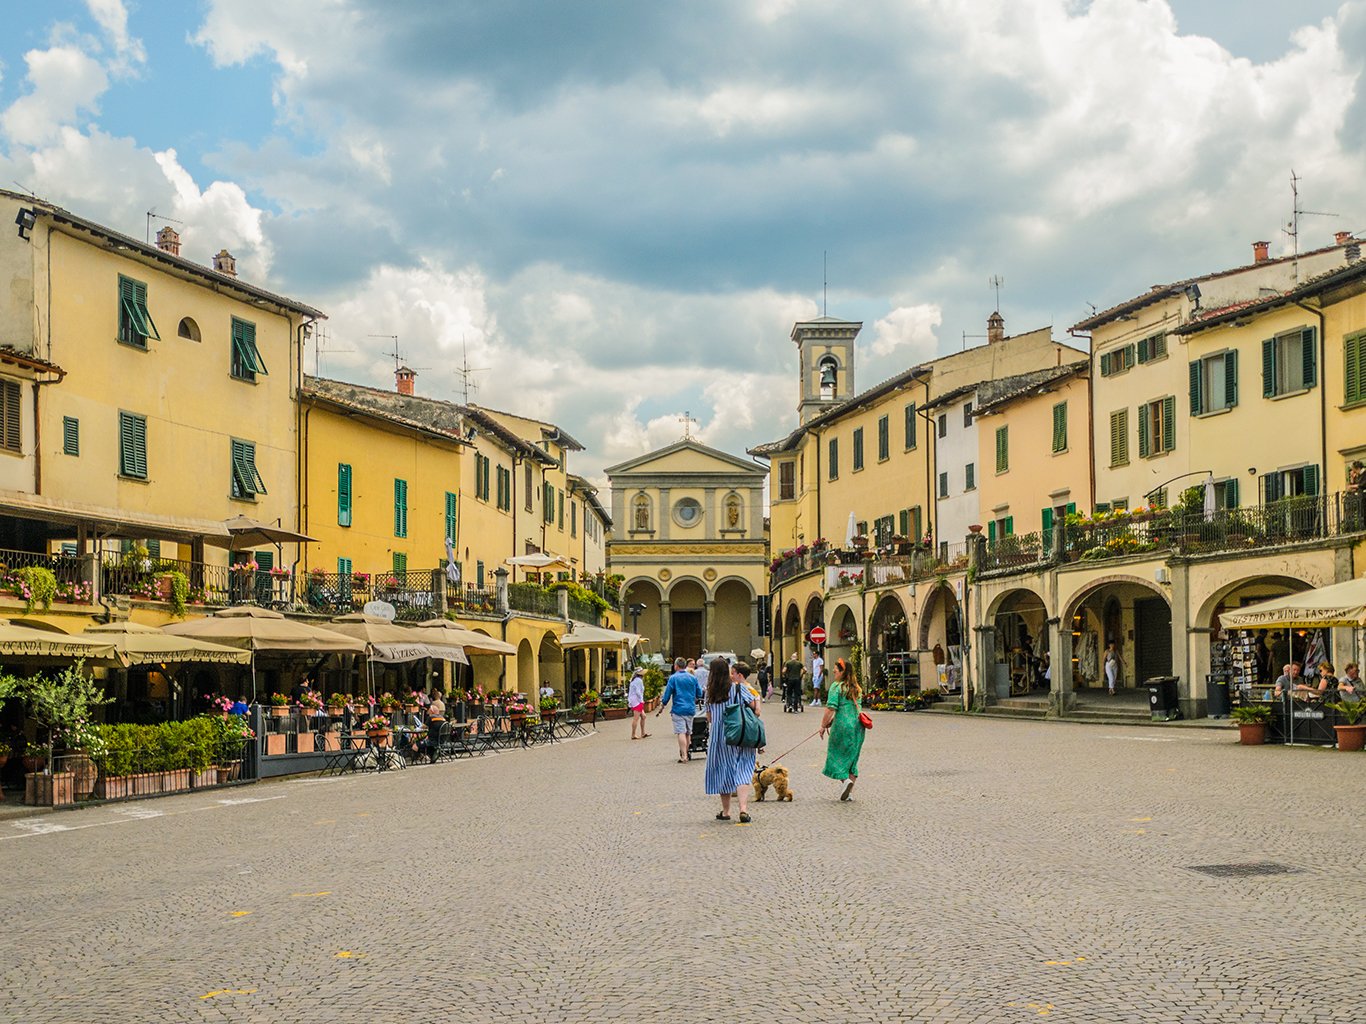 Městečko Greve in Chianti je centrem vinařské oblasti Chianti